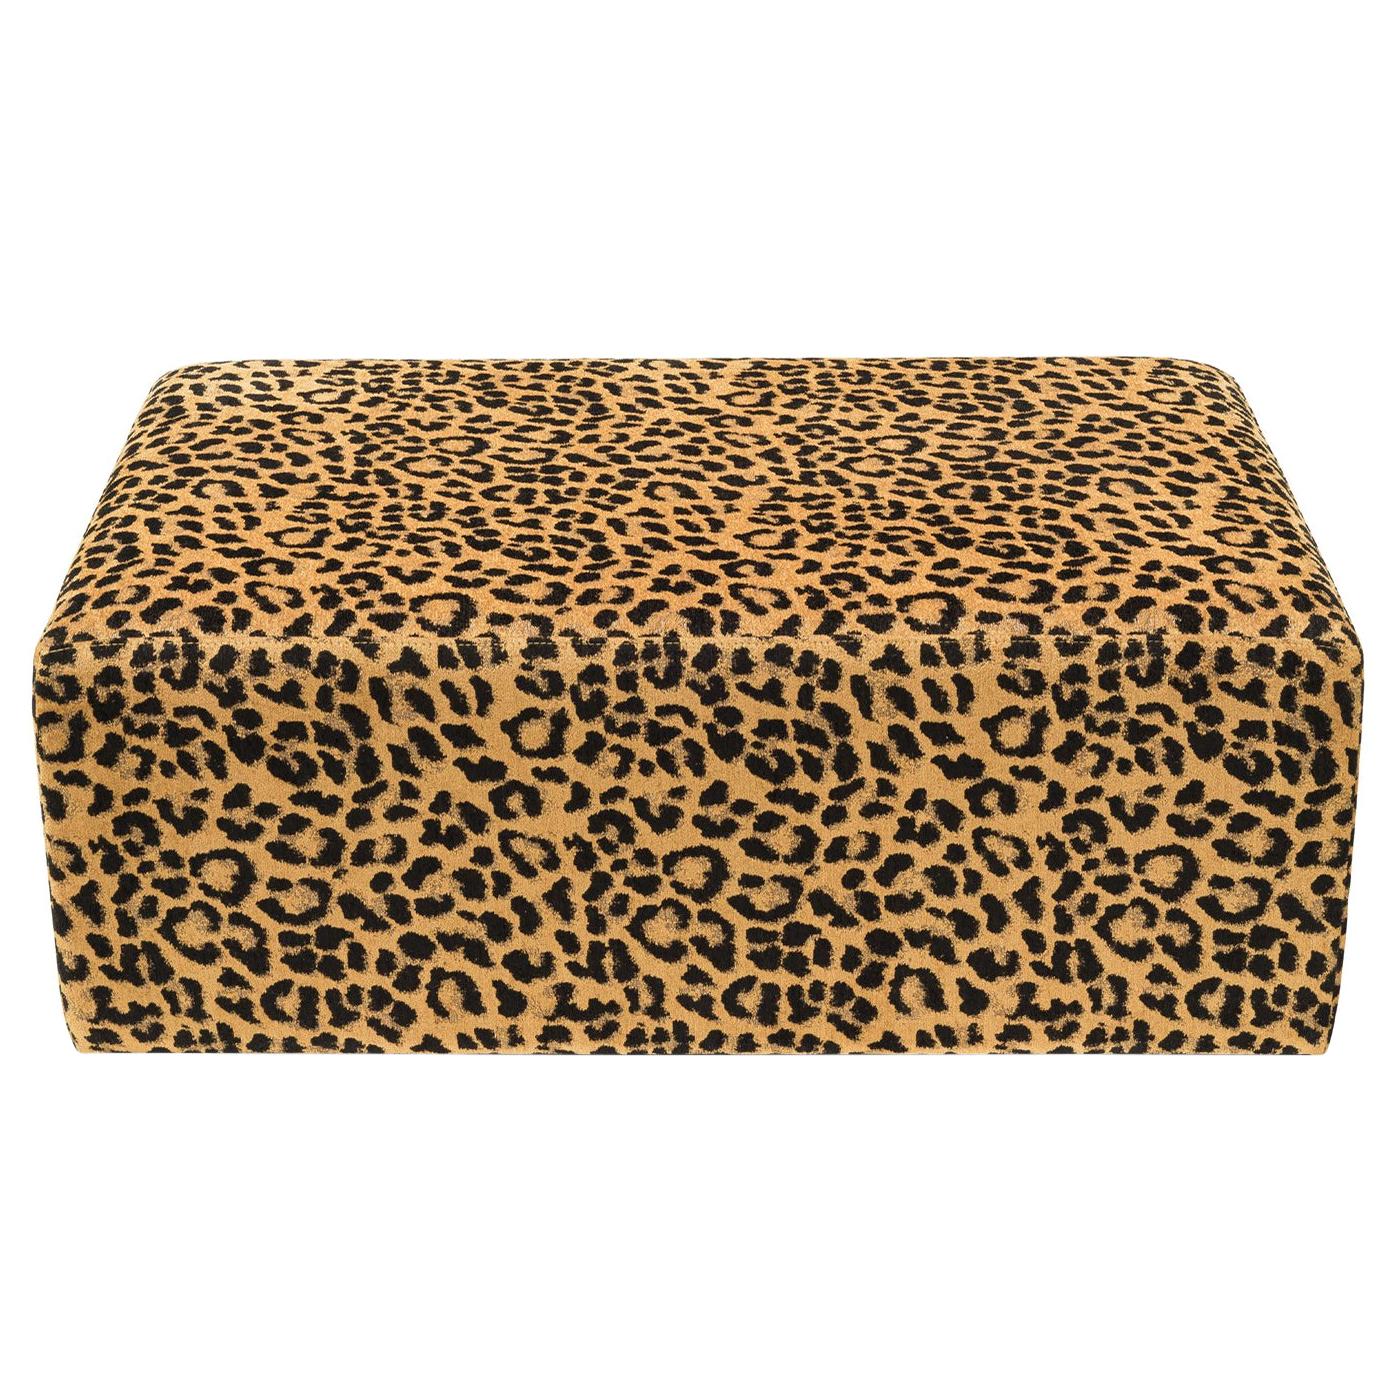 Leopard Pouf